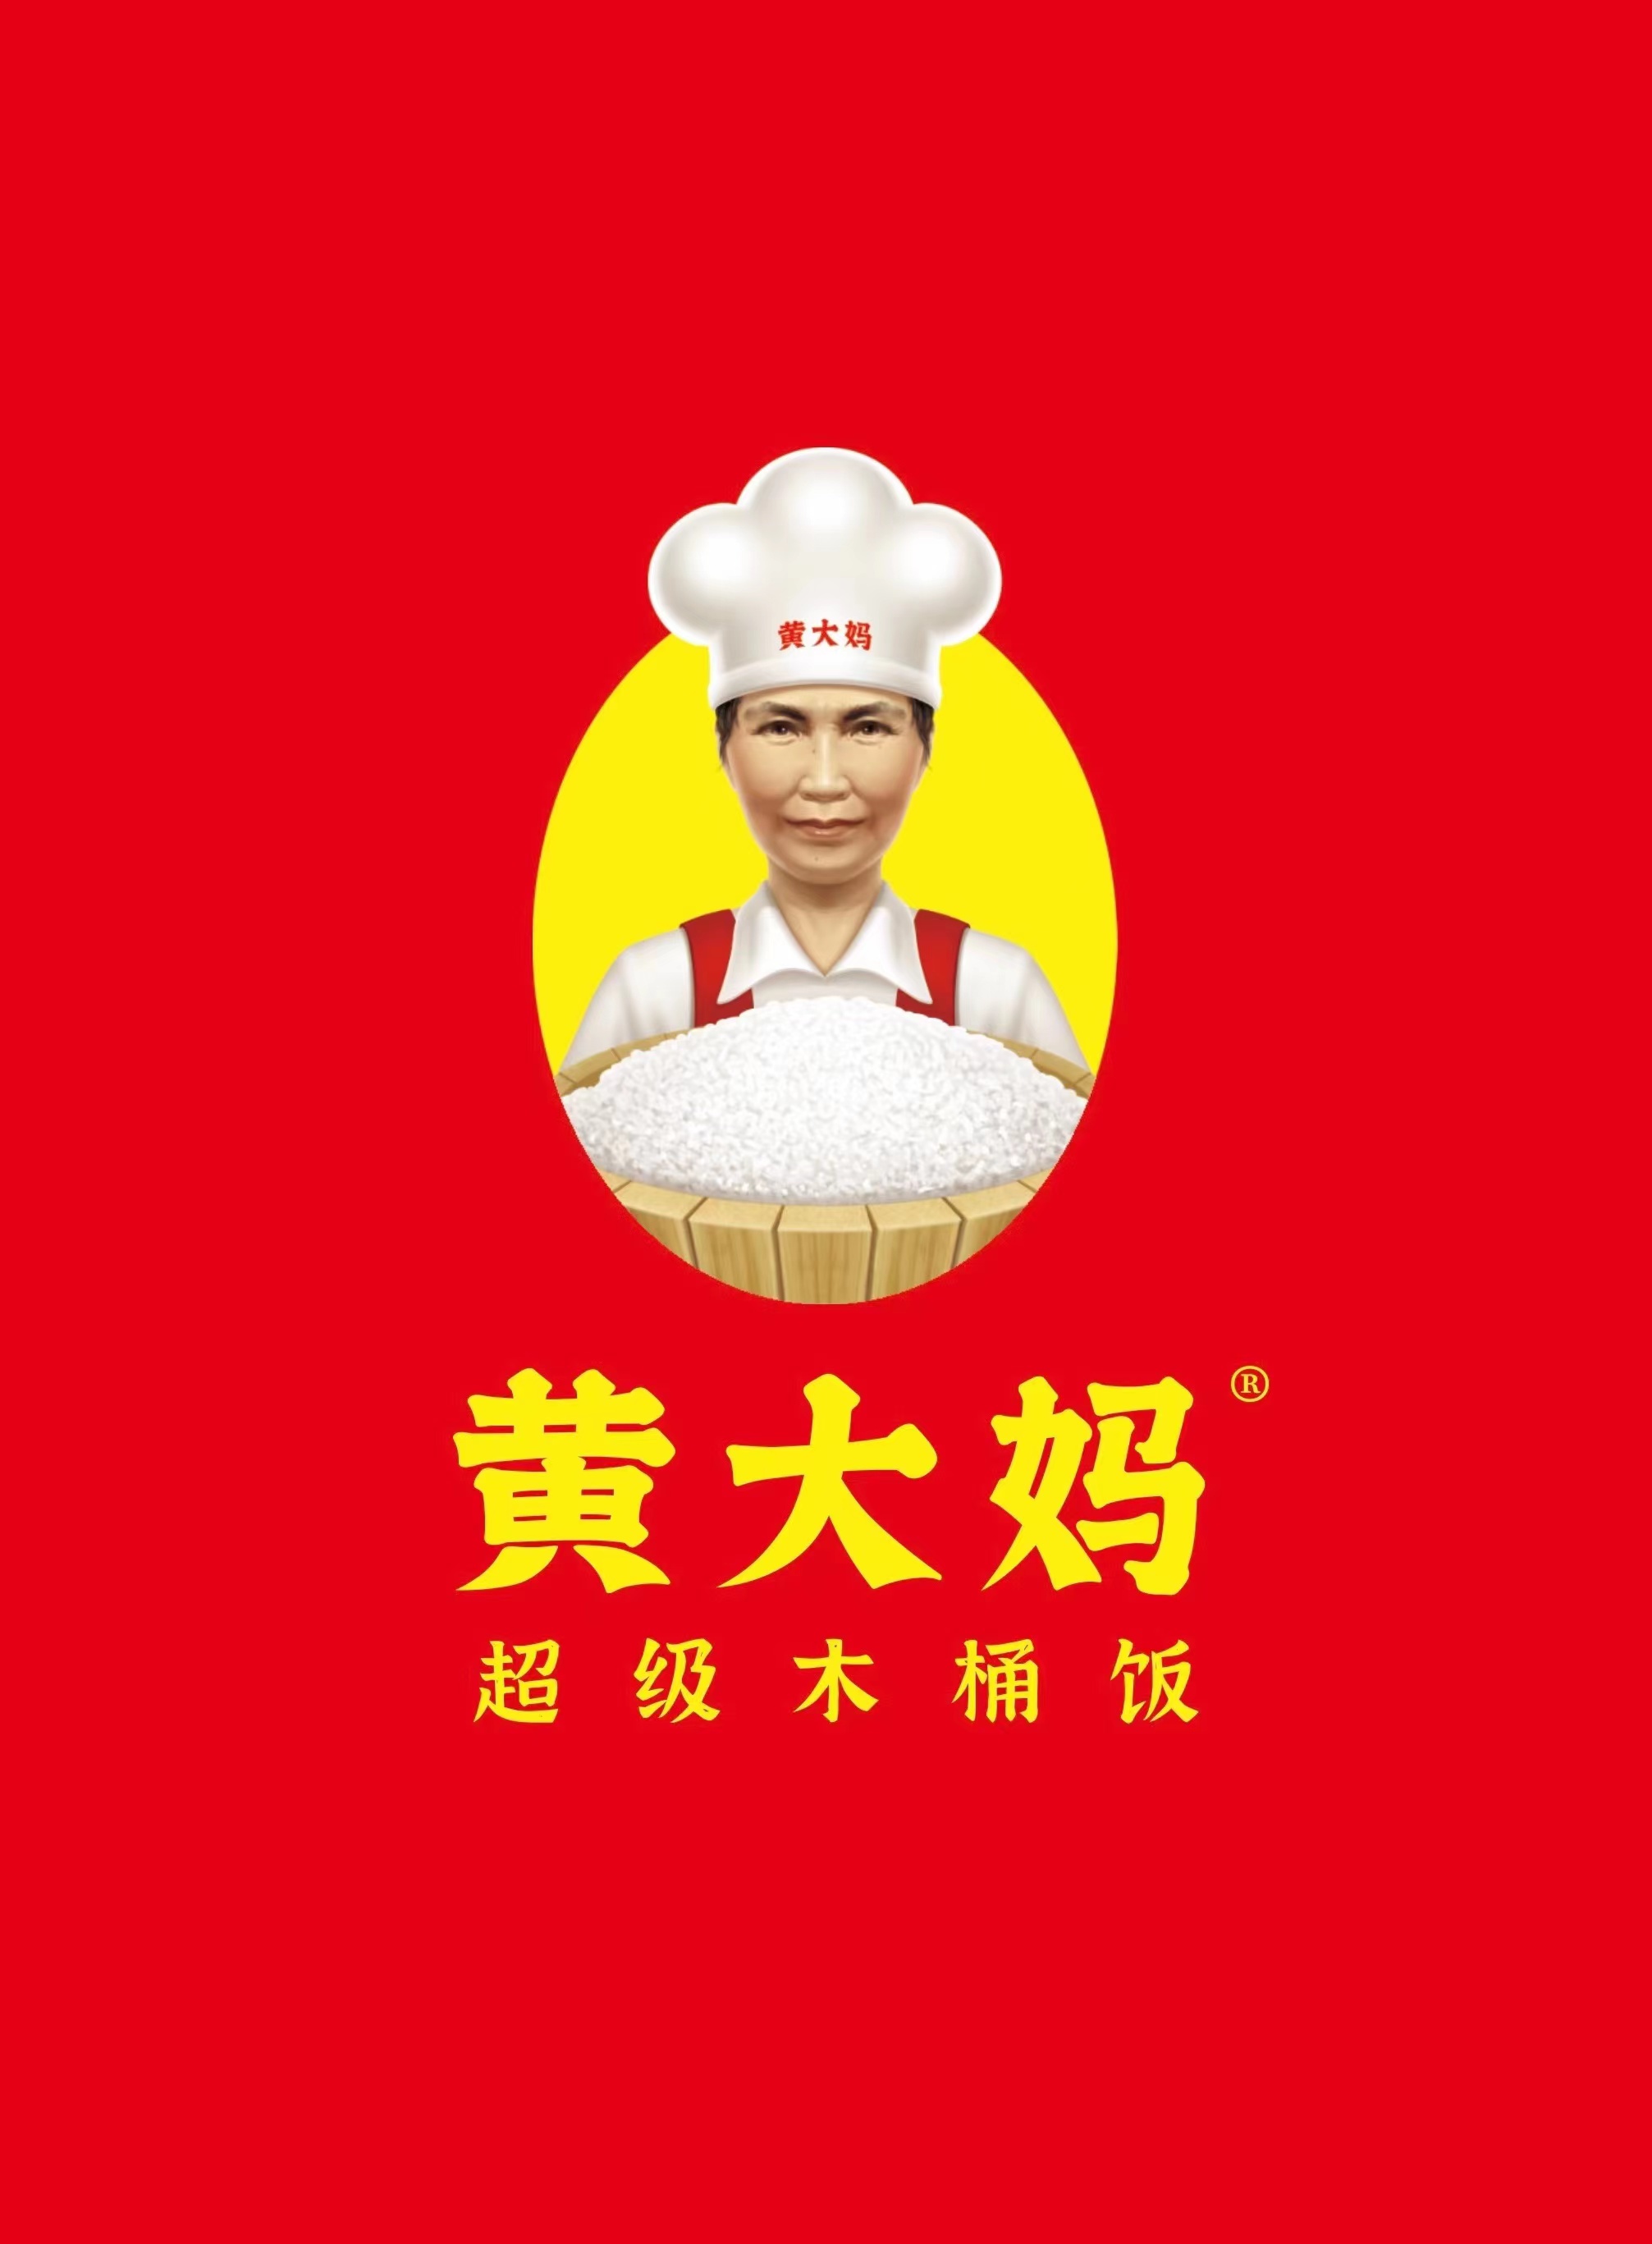 黄大妈餐饮管理（惠州）有限公司